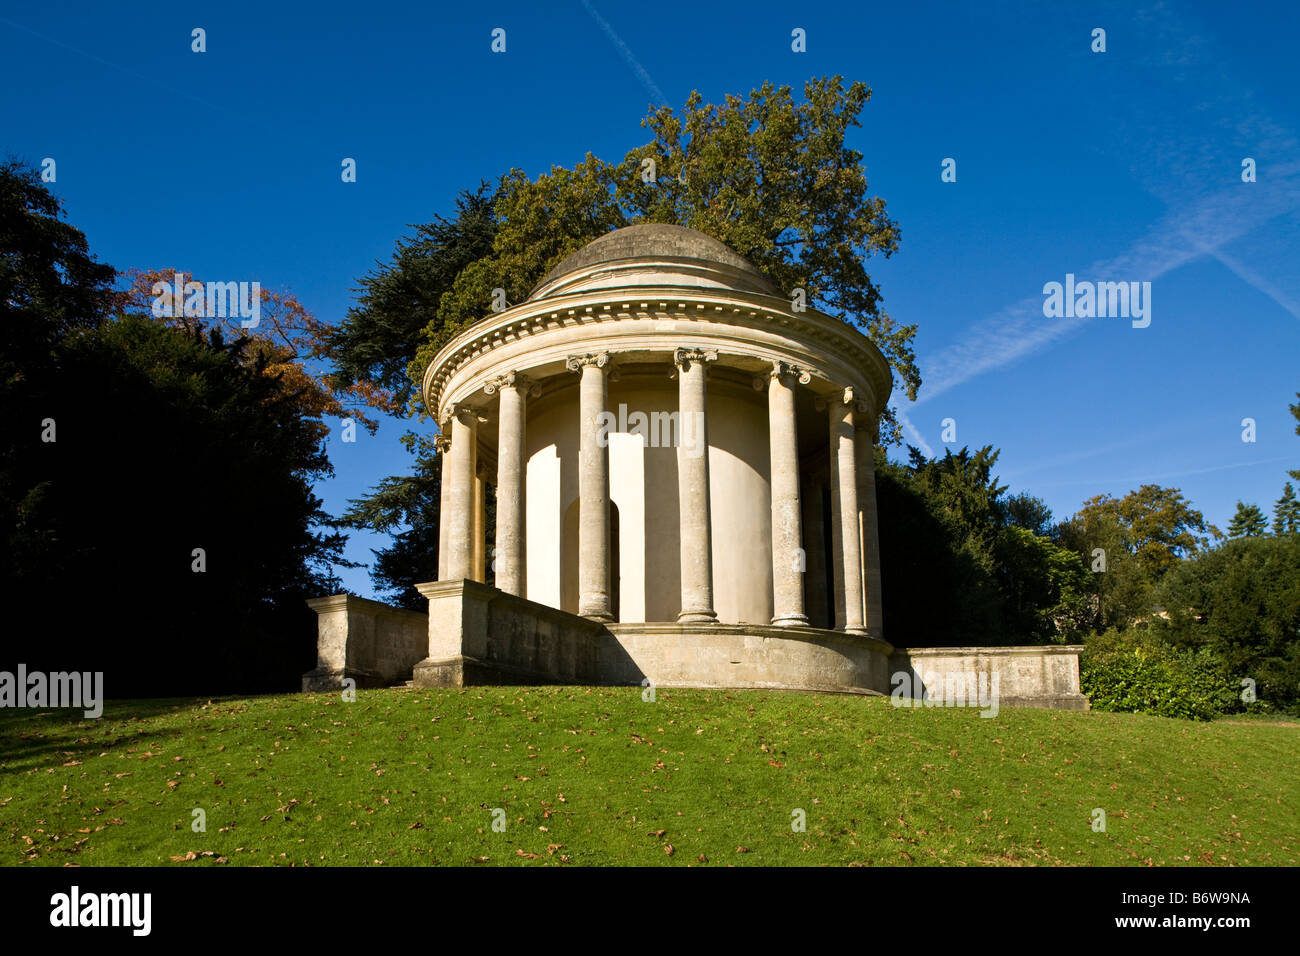 Le Temple de l'Antique vertu à Stowe, Buckinghamshire, Angleterre, Royaume-Uni. Banque D'Images